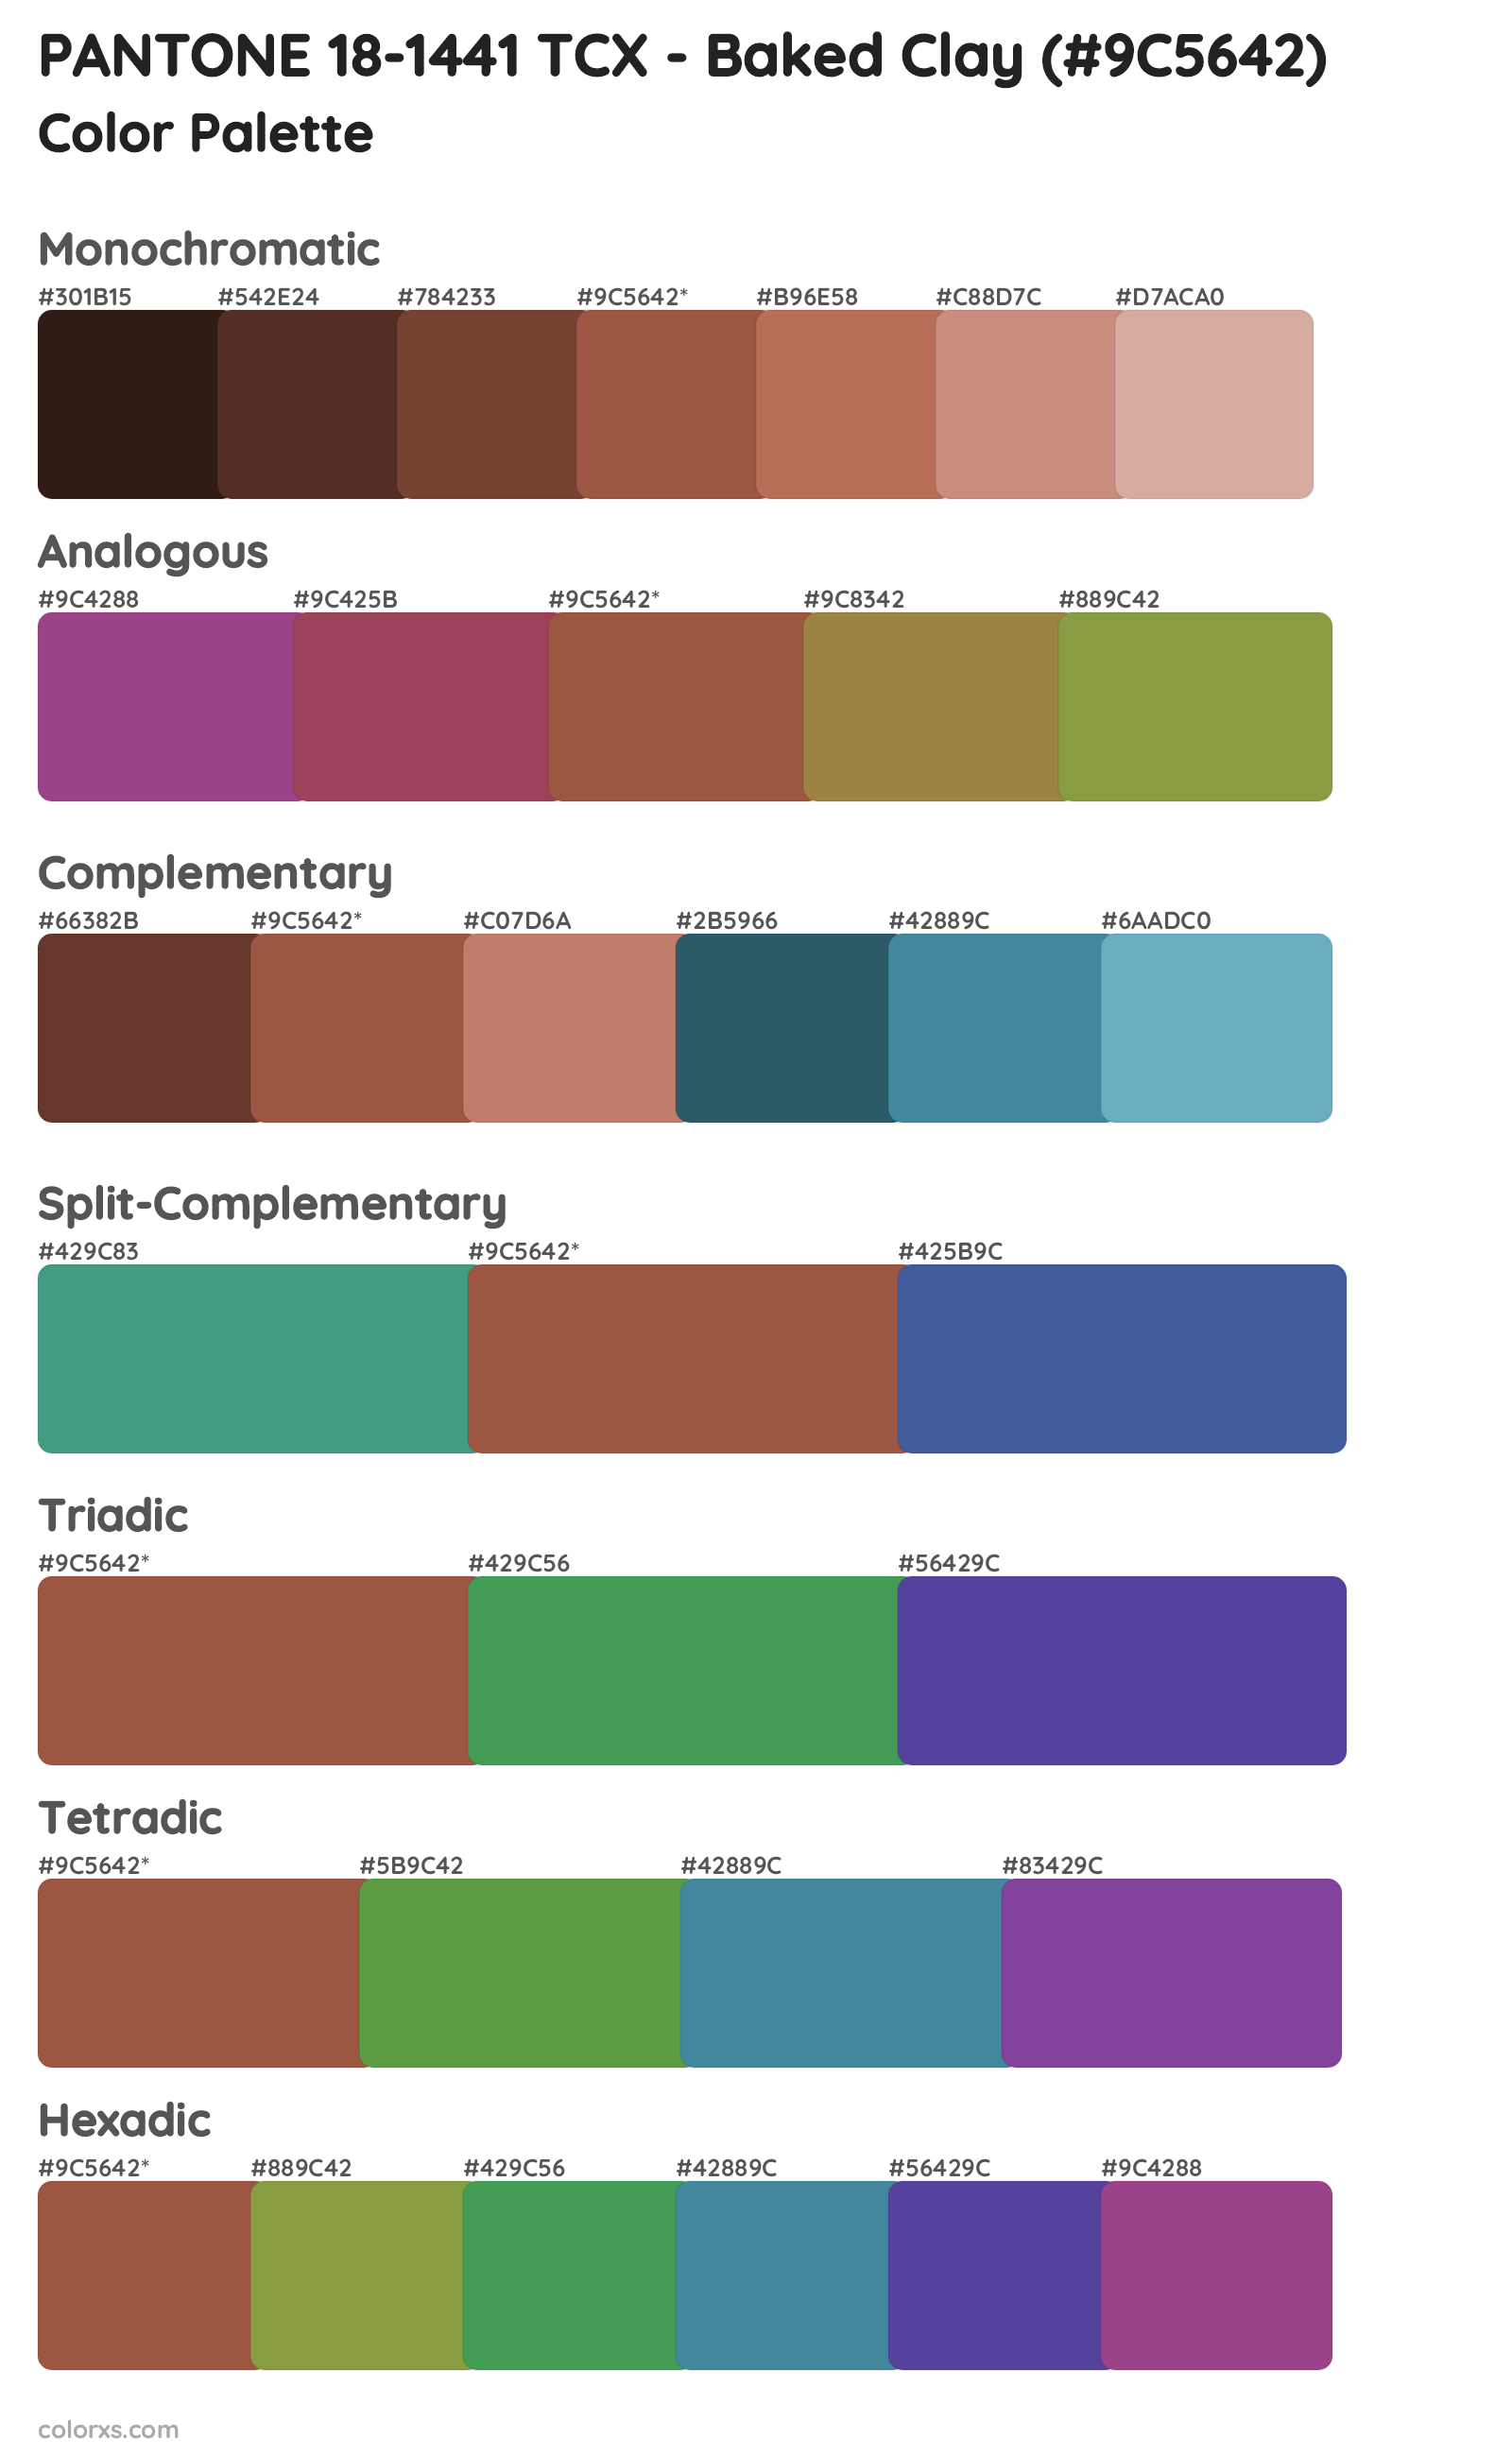 PANTONE 18-1441 TCX - Baked Clay Color Scheme Palettes